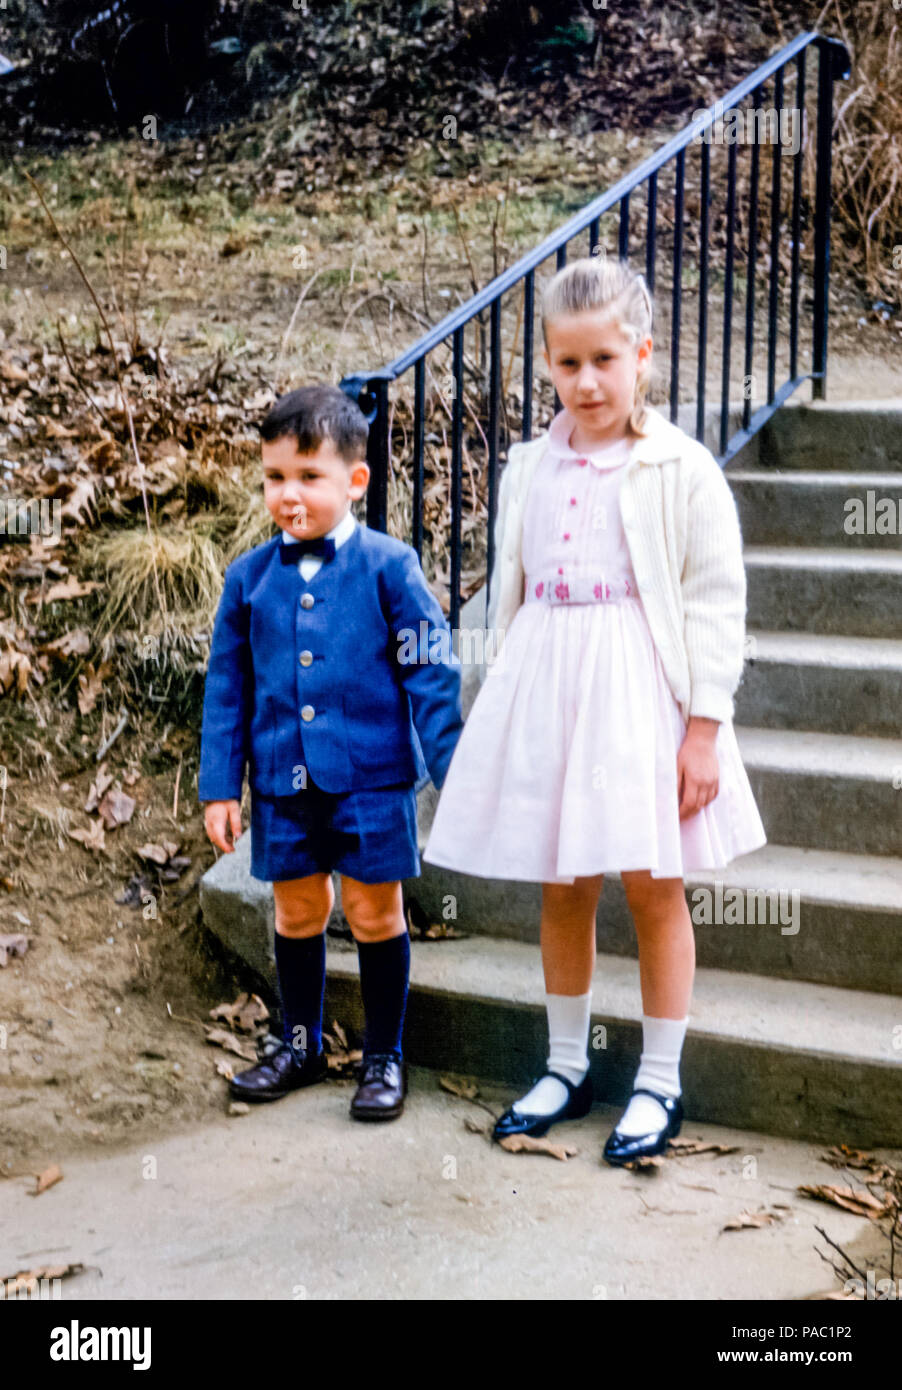 Los niños pequeños aire libre por pasos sosteniendo las manos usando ropa de domingo en EE.UU. En la década 1960. La niña de 5 lleva un vestido fiesta